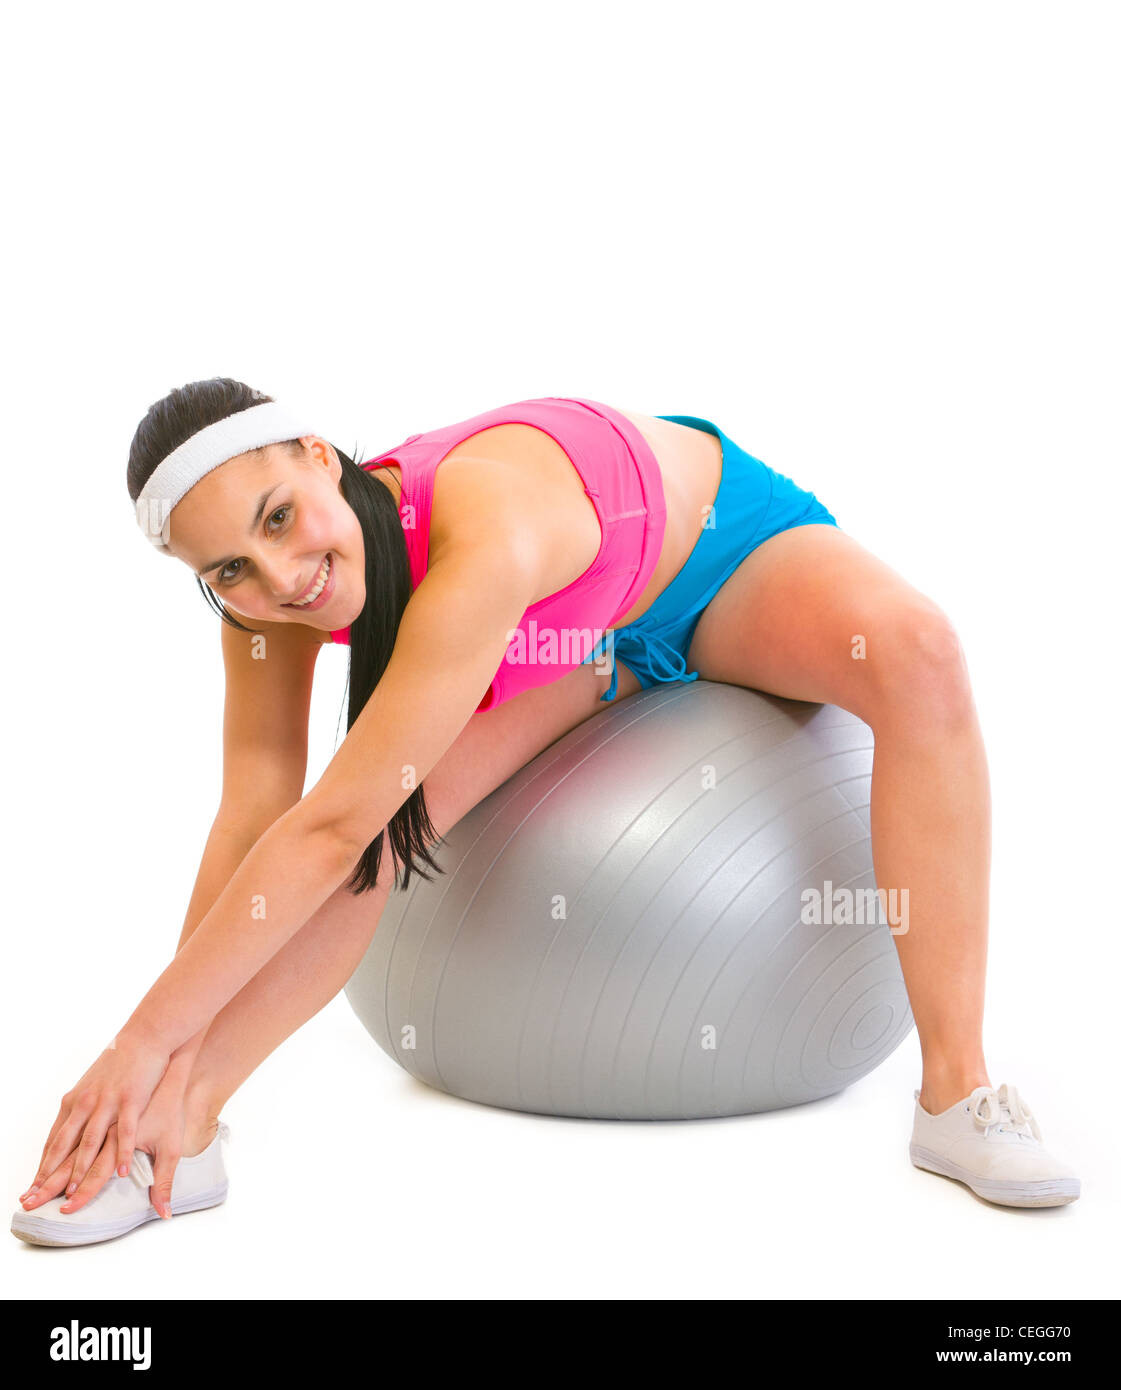 Slim girl making exercises on fitness ball Stock Photo